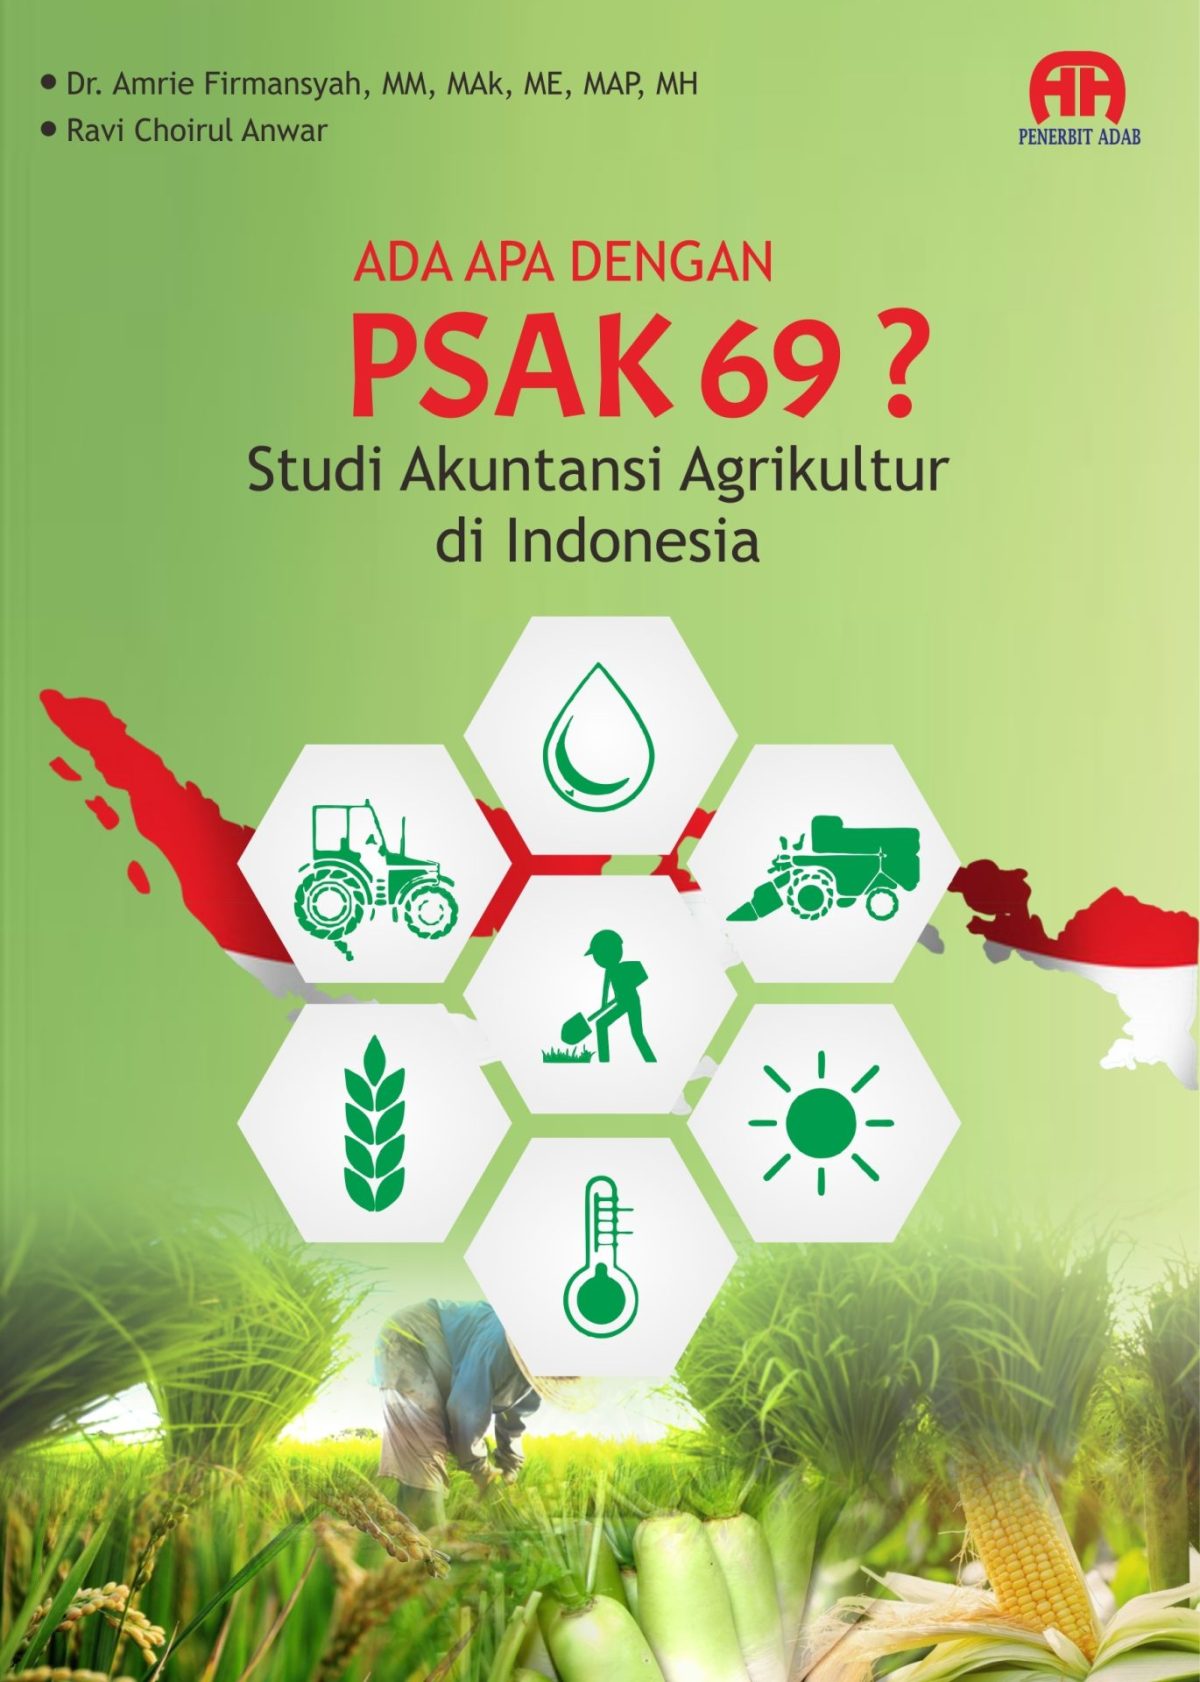 Ada Apa Dengan Psak 69? Studi Akuntansi Agrikultur Di Indonesia